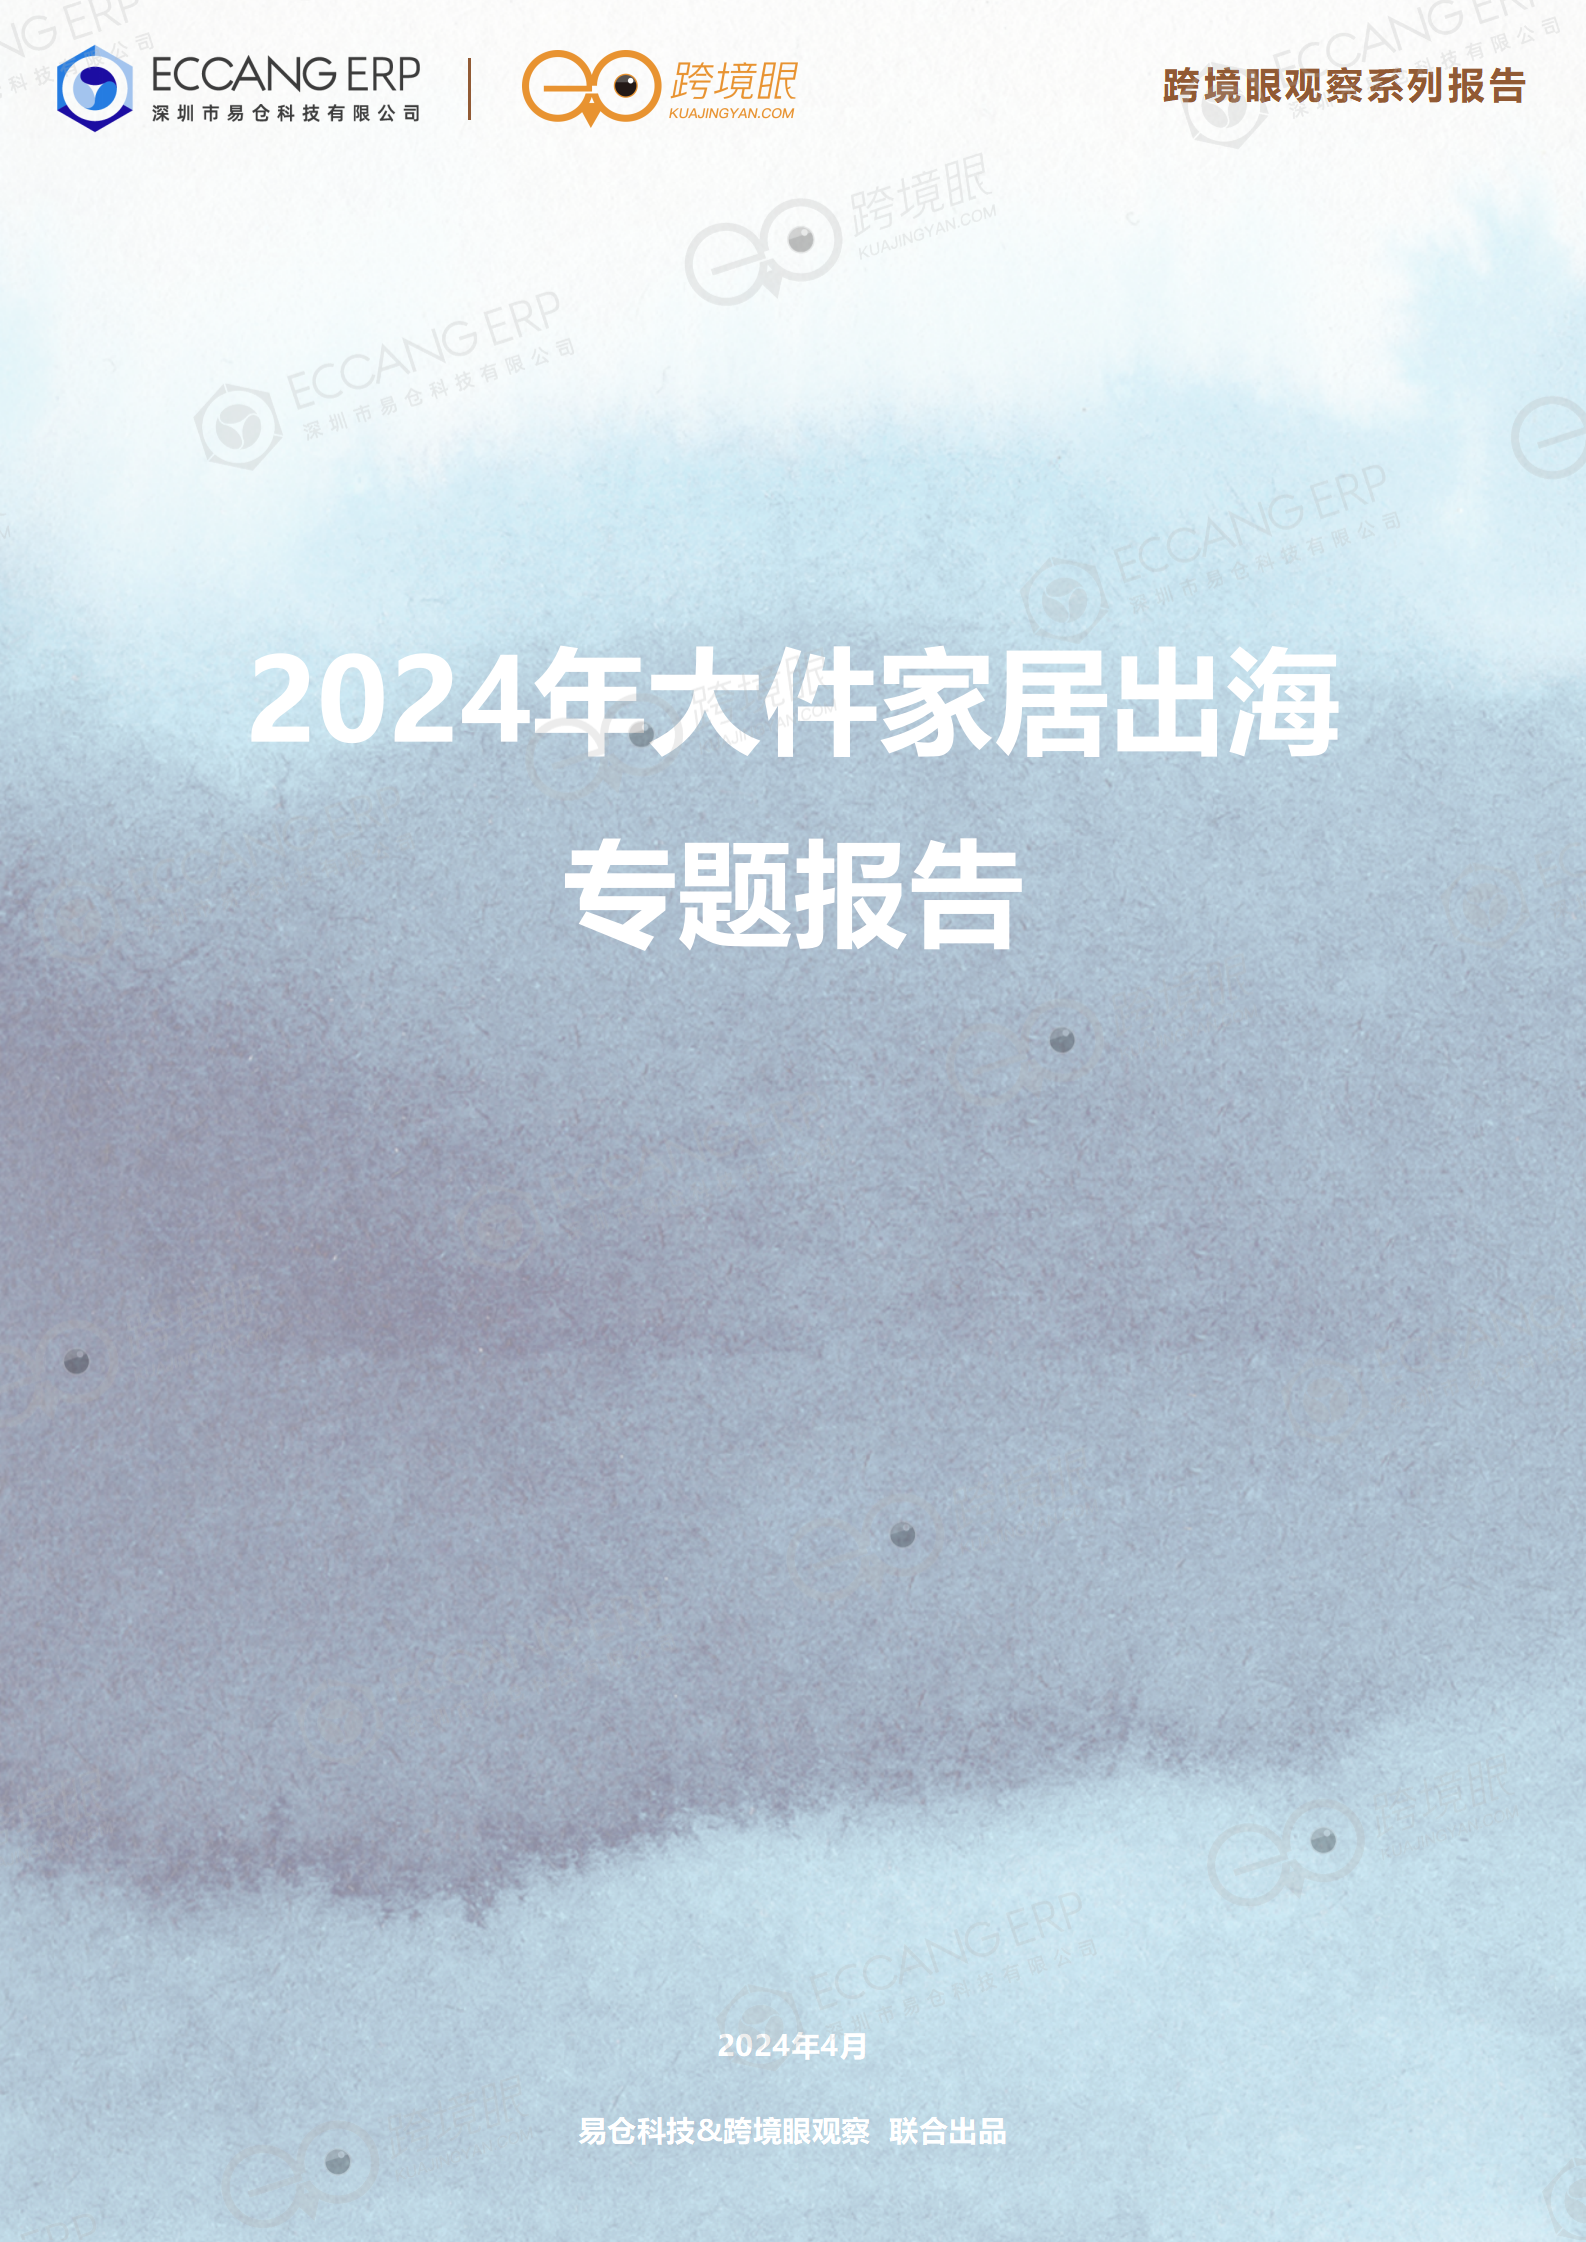 【跨境眼观察系列报告】2024年大件家居出海专题报告（4月电子刊）_01.png